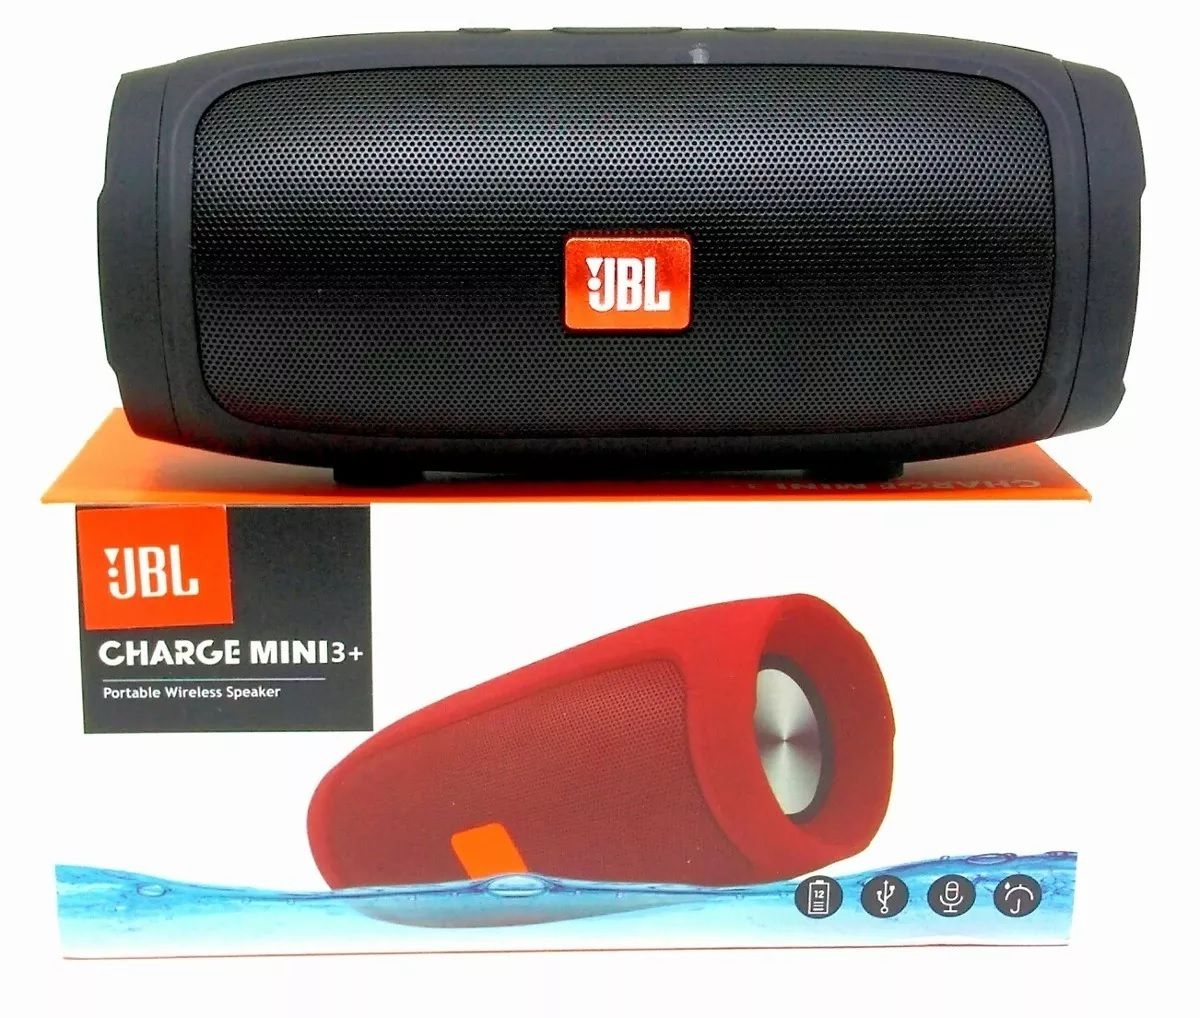 Competitive surge doll Caixa de Som Portátil Bluetooth JBL Charge Mini 3+ - 1°Linha - Preto | CB  Acessórios